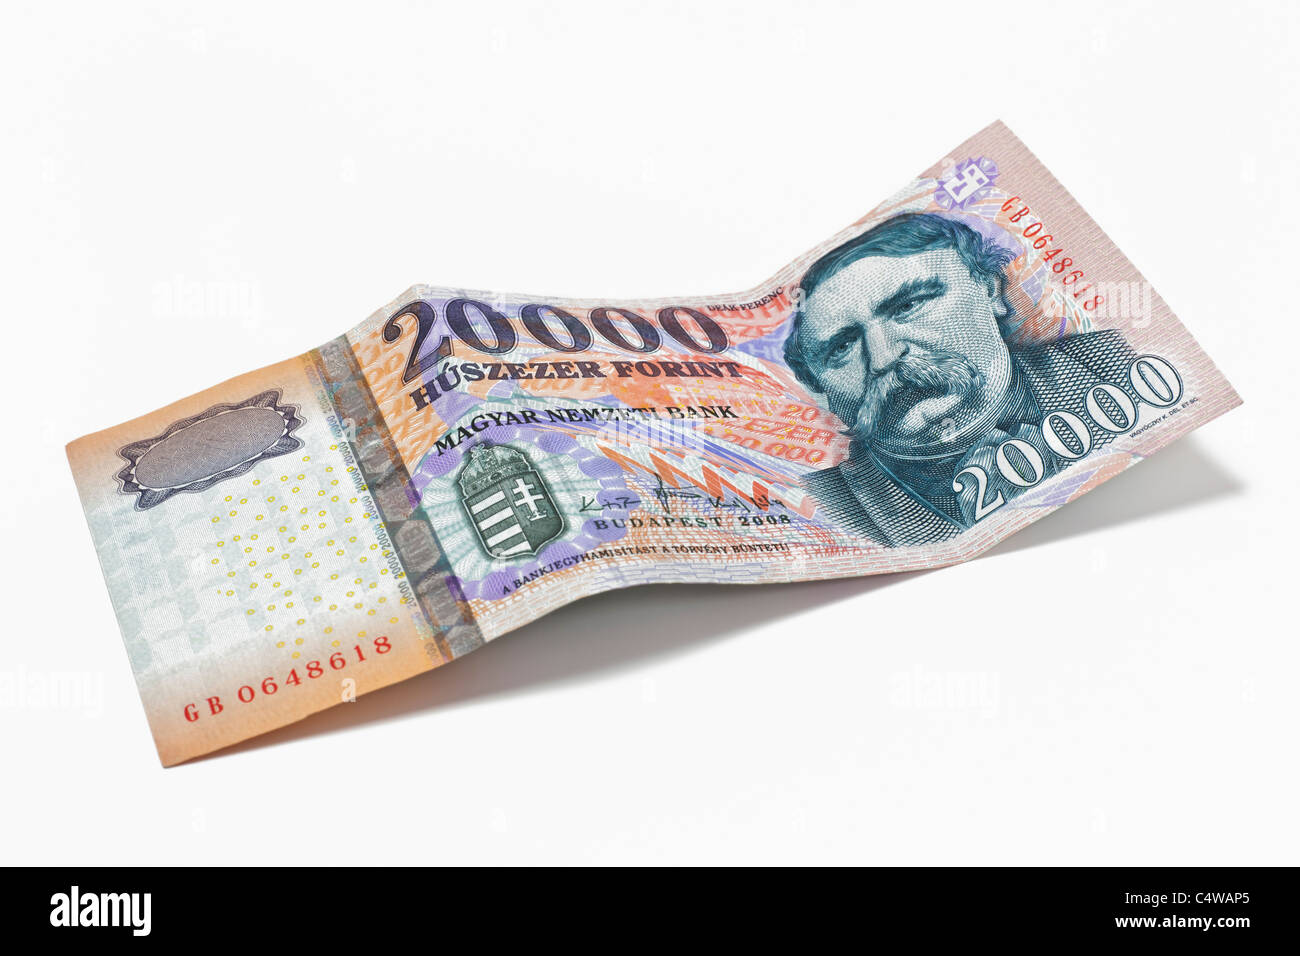 Von Detailansicht ungarischen Forint 20,000 euros | photo de détail un hongrois forint 20,000 Euros Banque D'Images